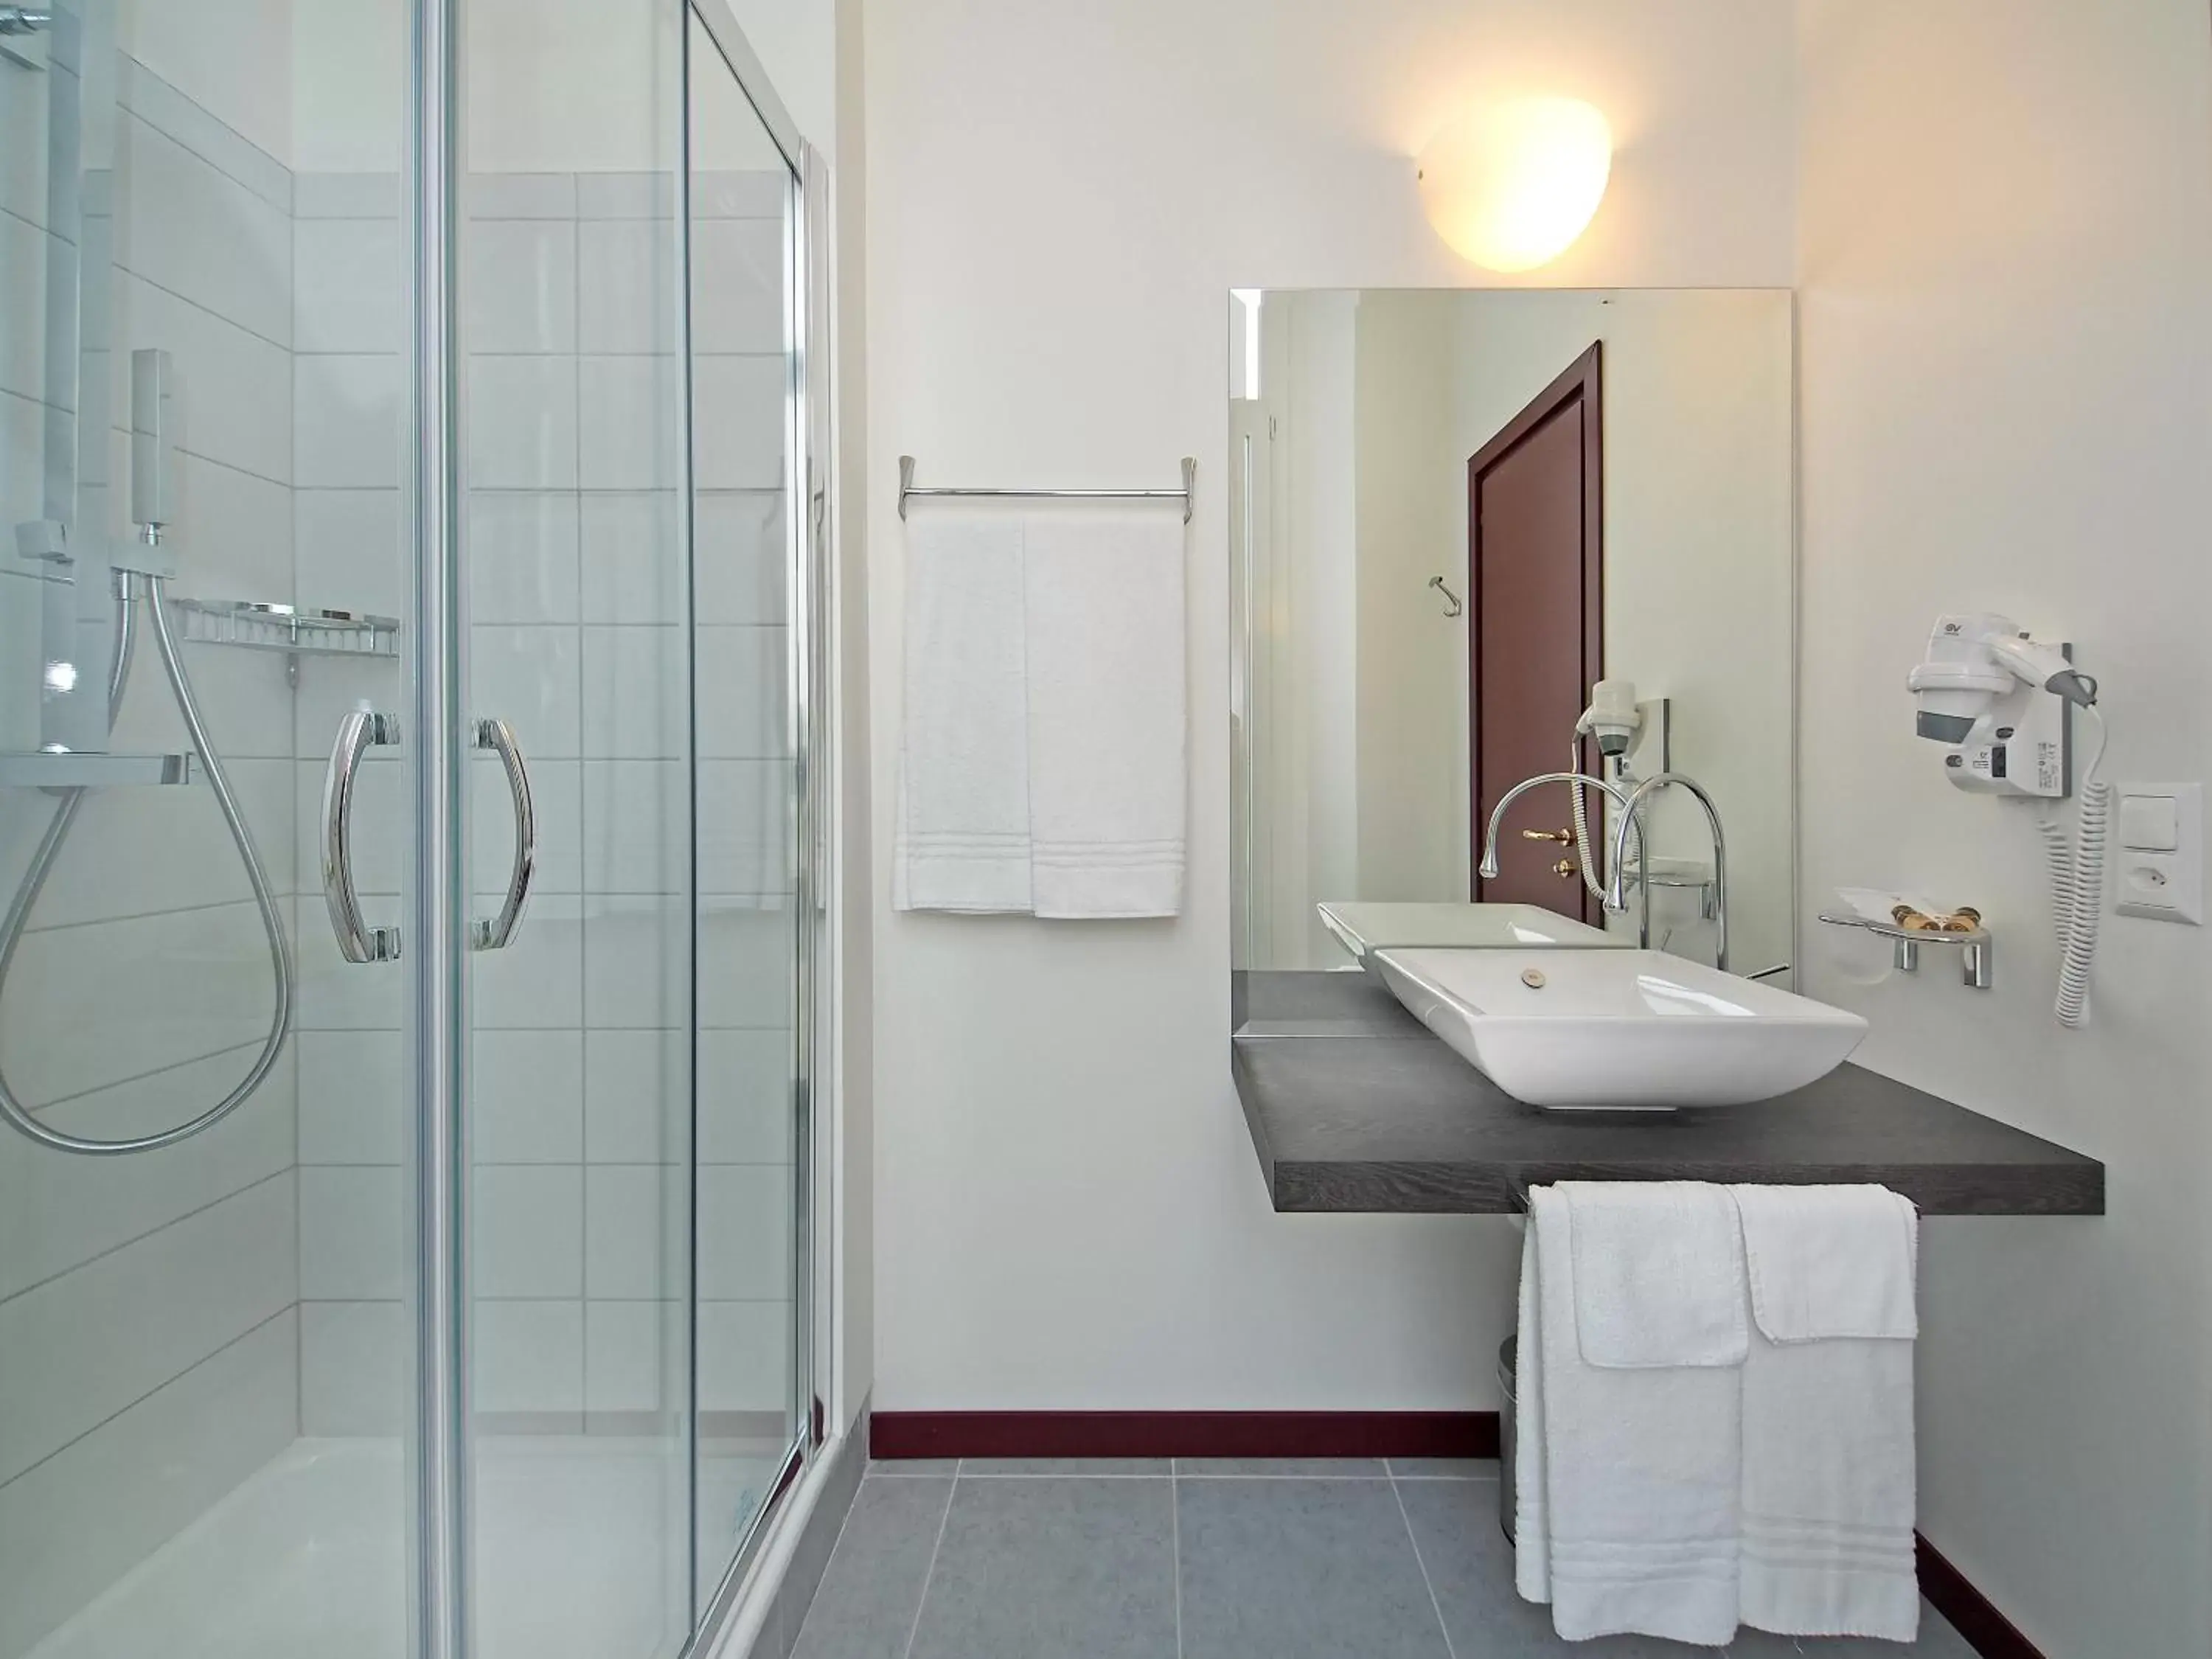 Bathroom in Hotel Rio Garni